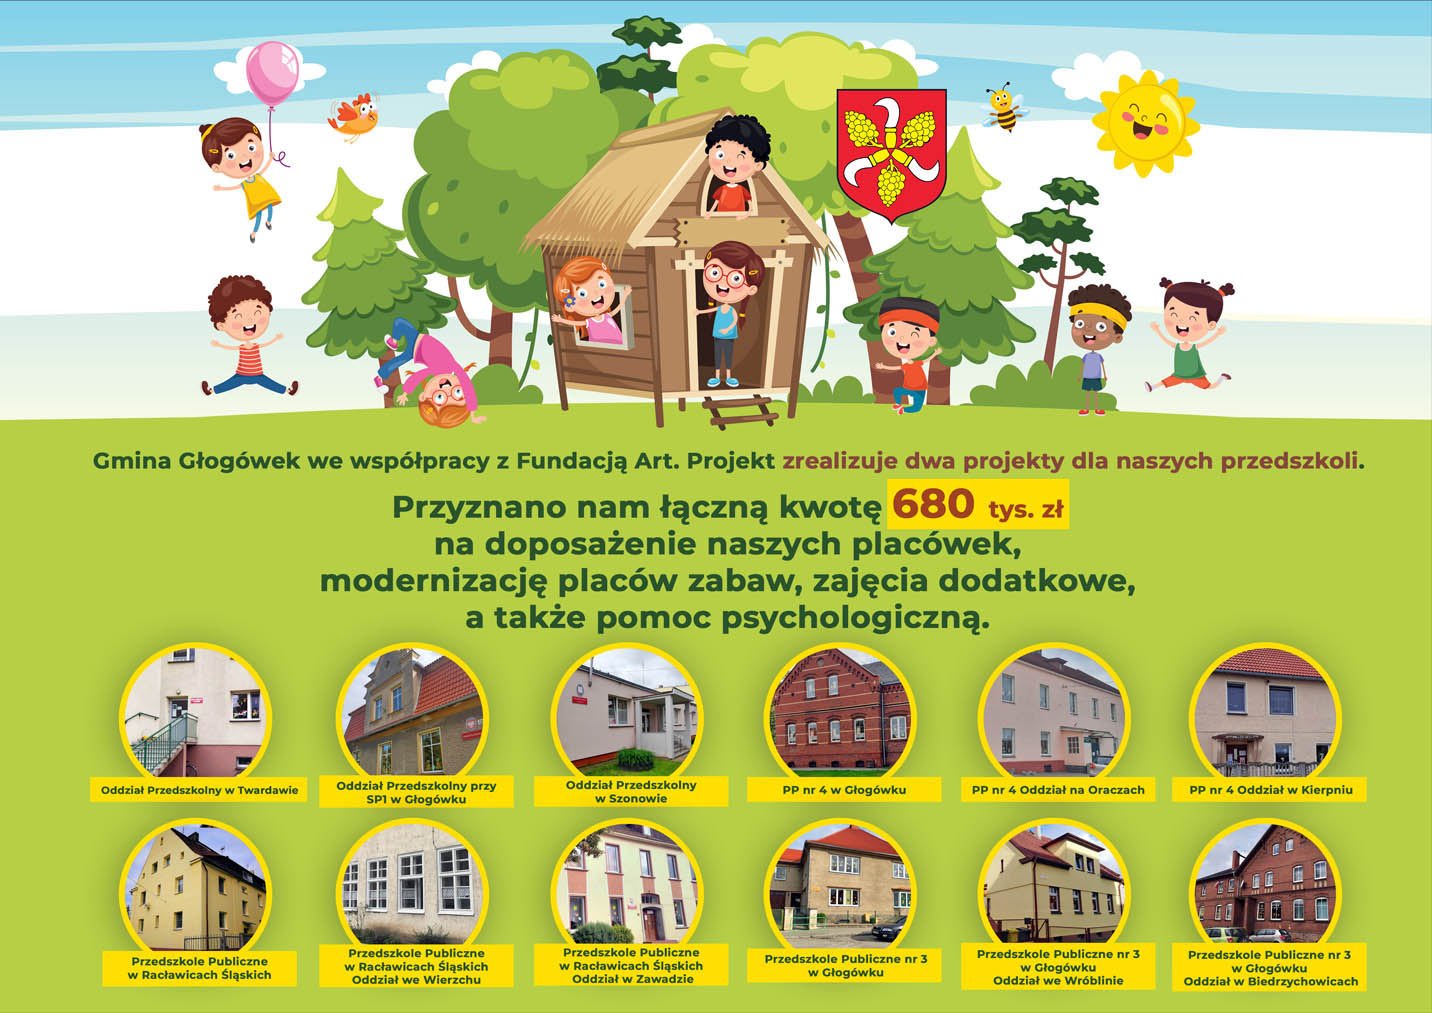 Plakat informujący o przyznaniu dotacji dla przedszkoli - widać na nim dzieci oraz zdjęcia naszych przedszkoli